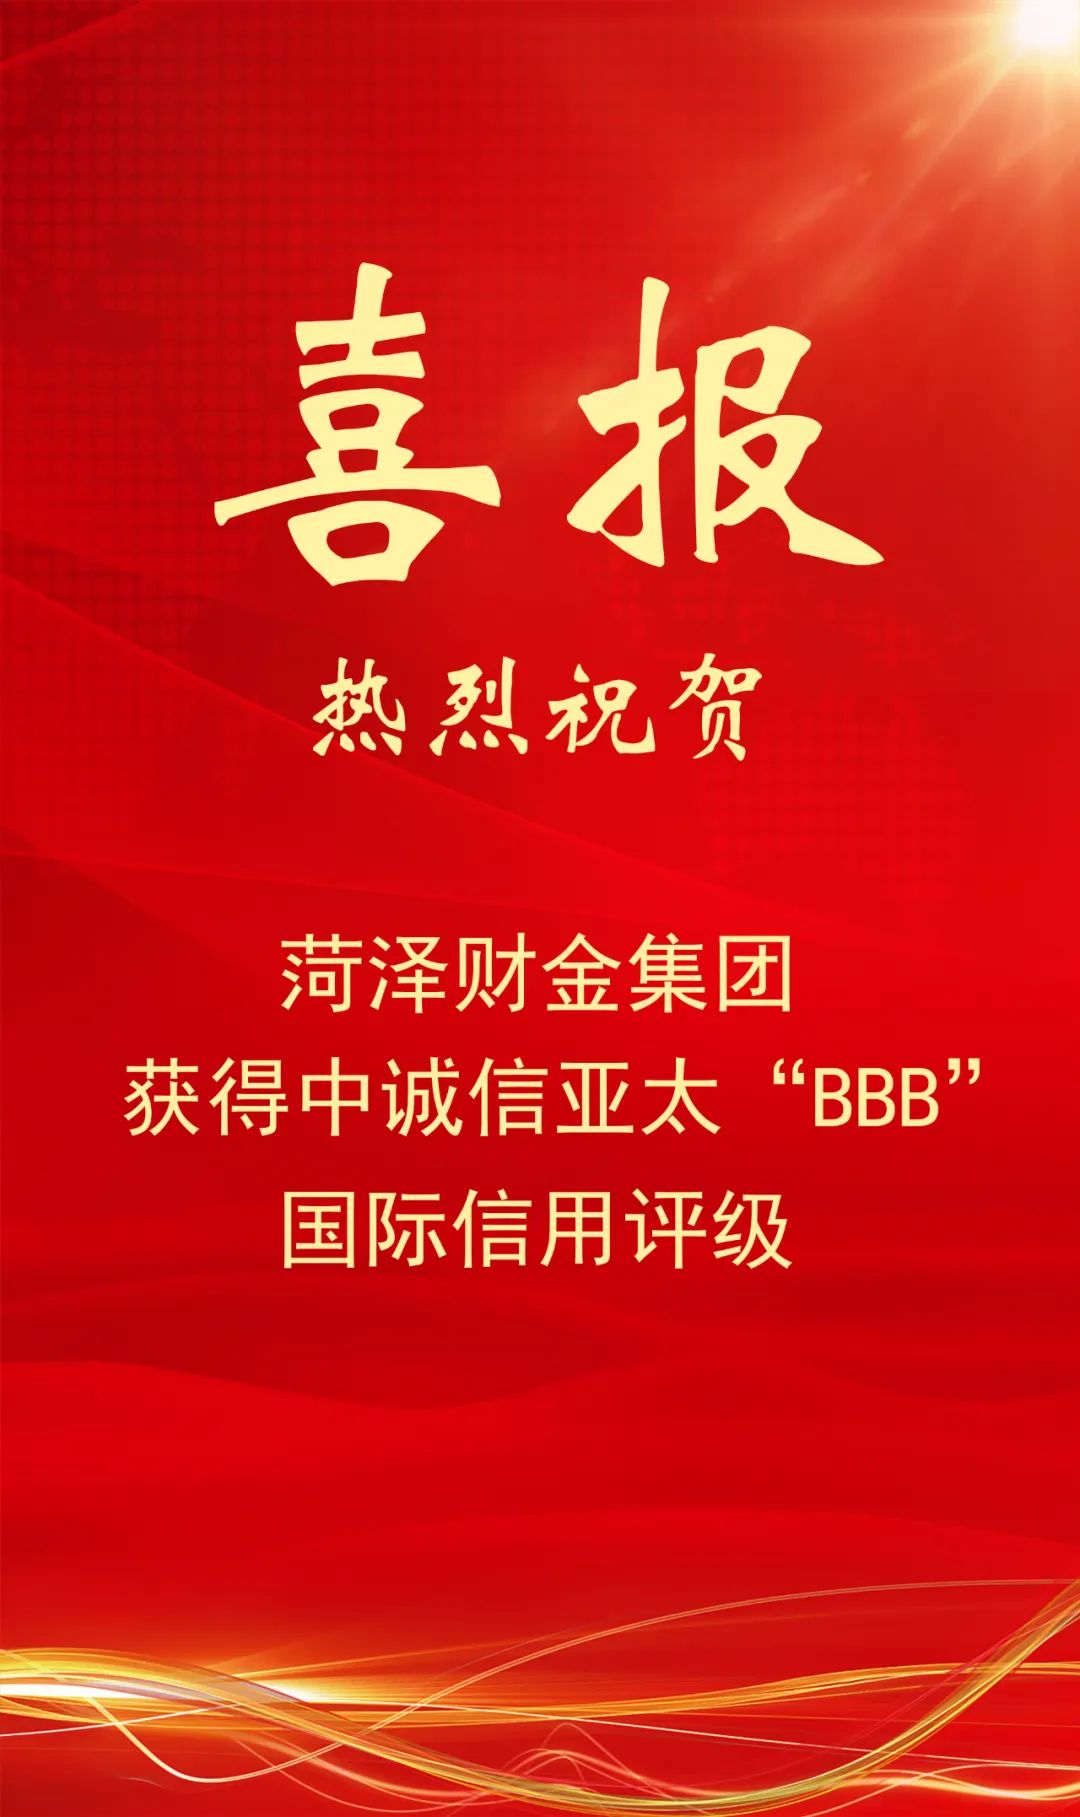 喜报！集团获得中诚信亚太“BBB”国际信用评级！